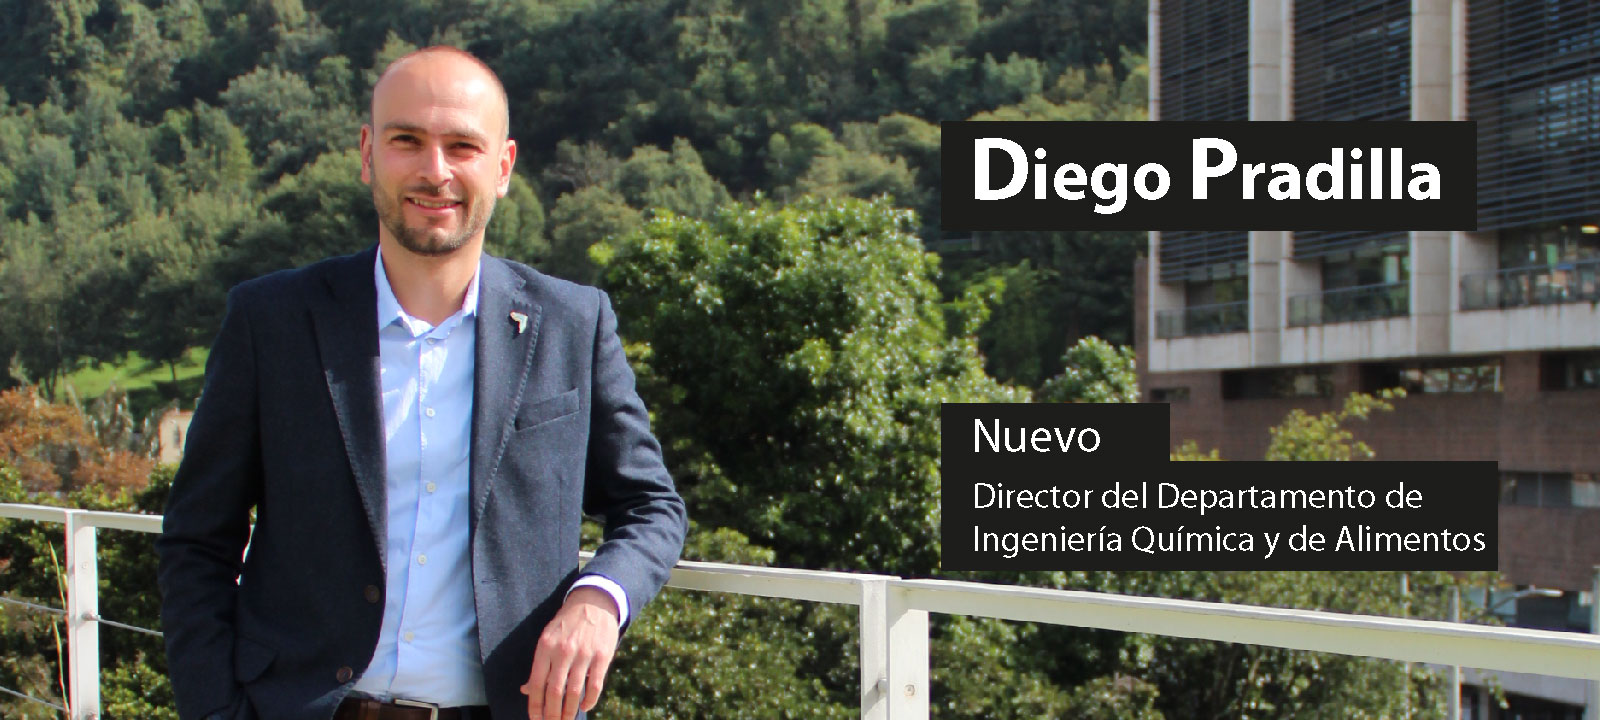 Profesor Diego Pradilla Director de Departamento de Ingenieria Química y Alimentos desde enero de 2022